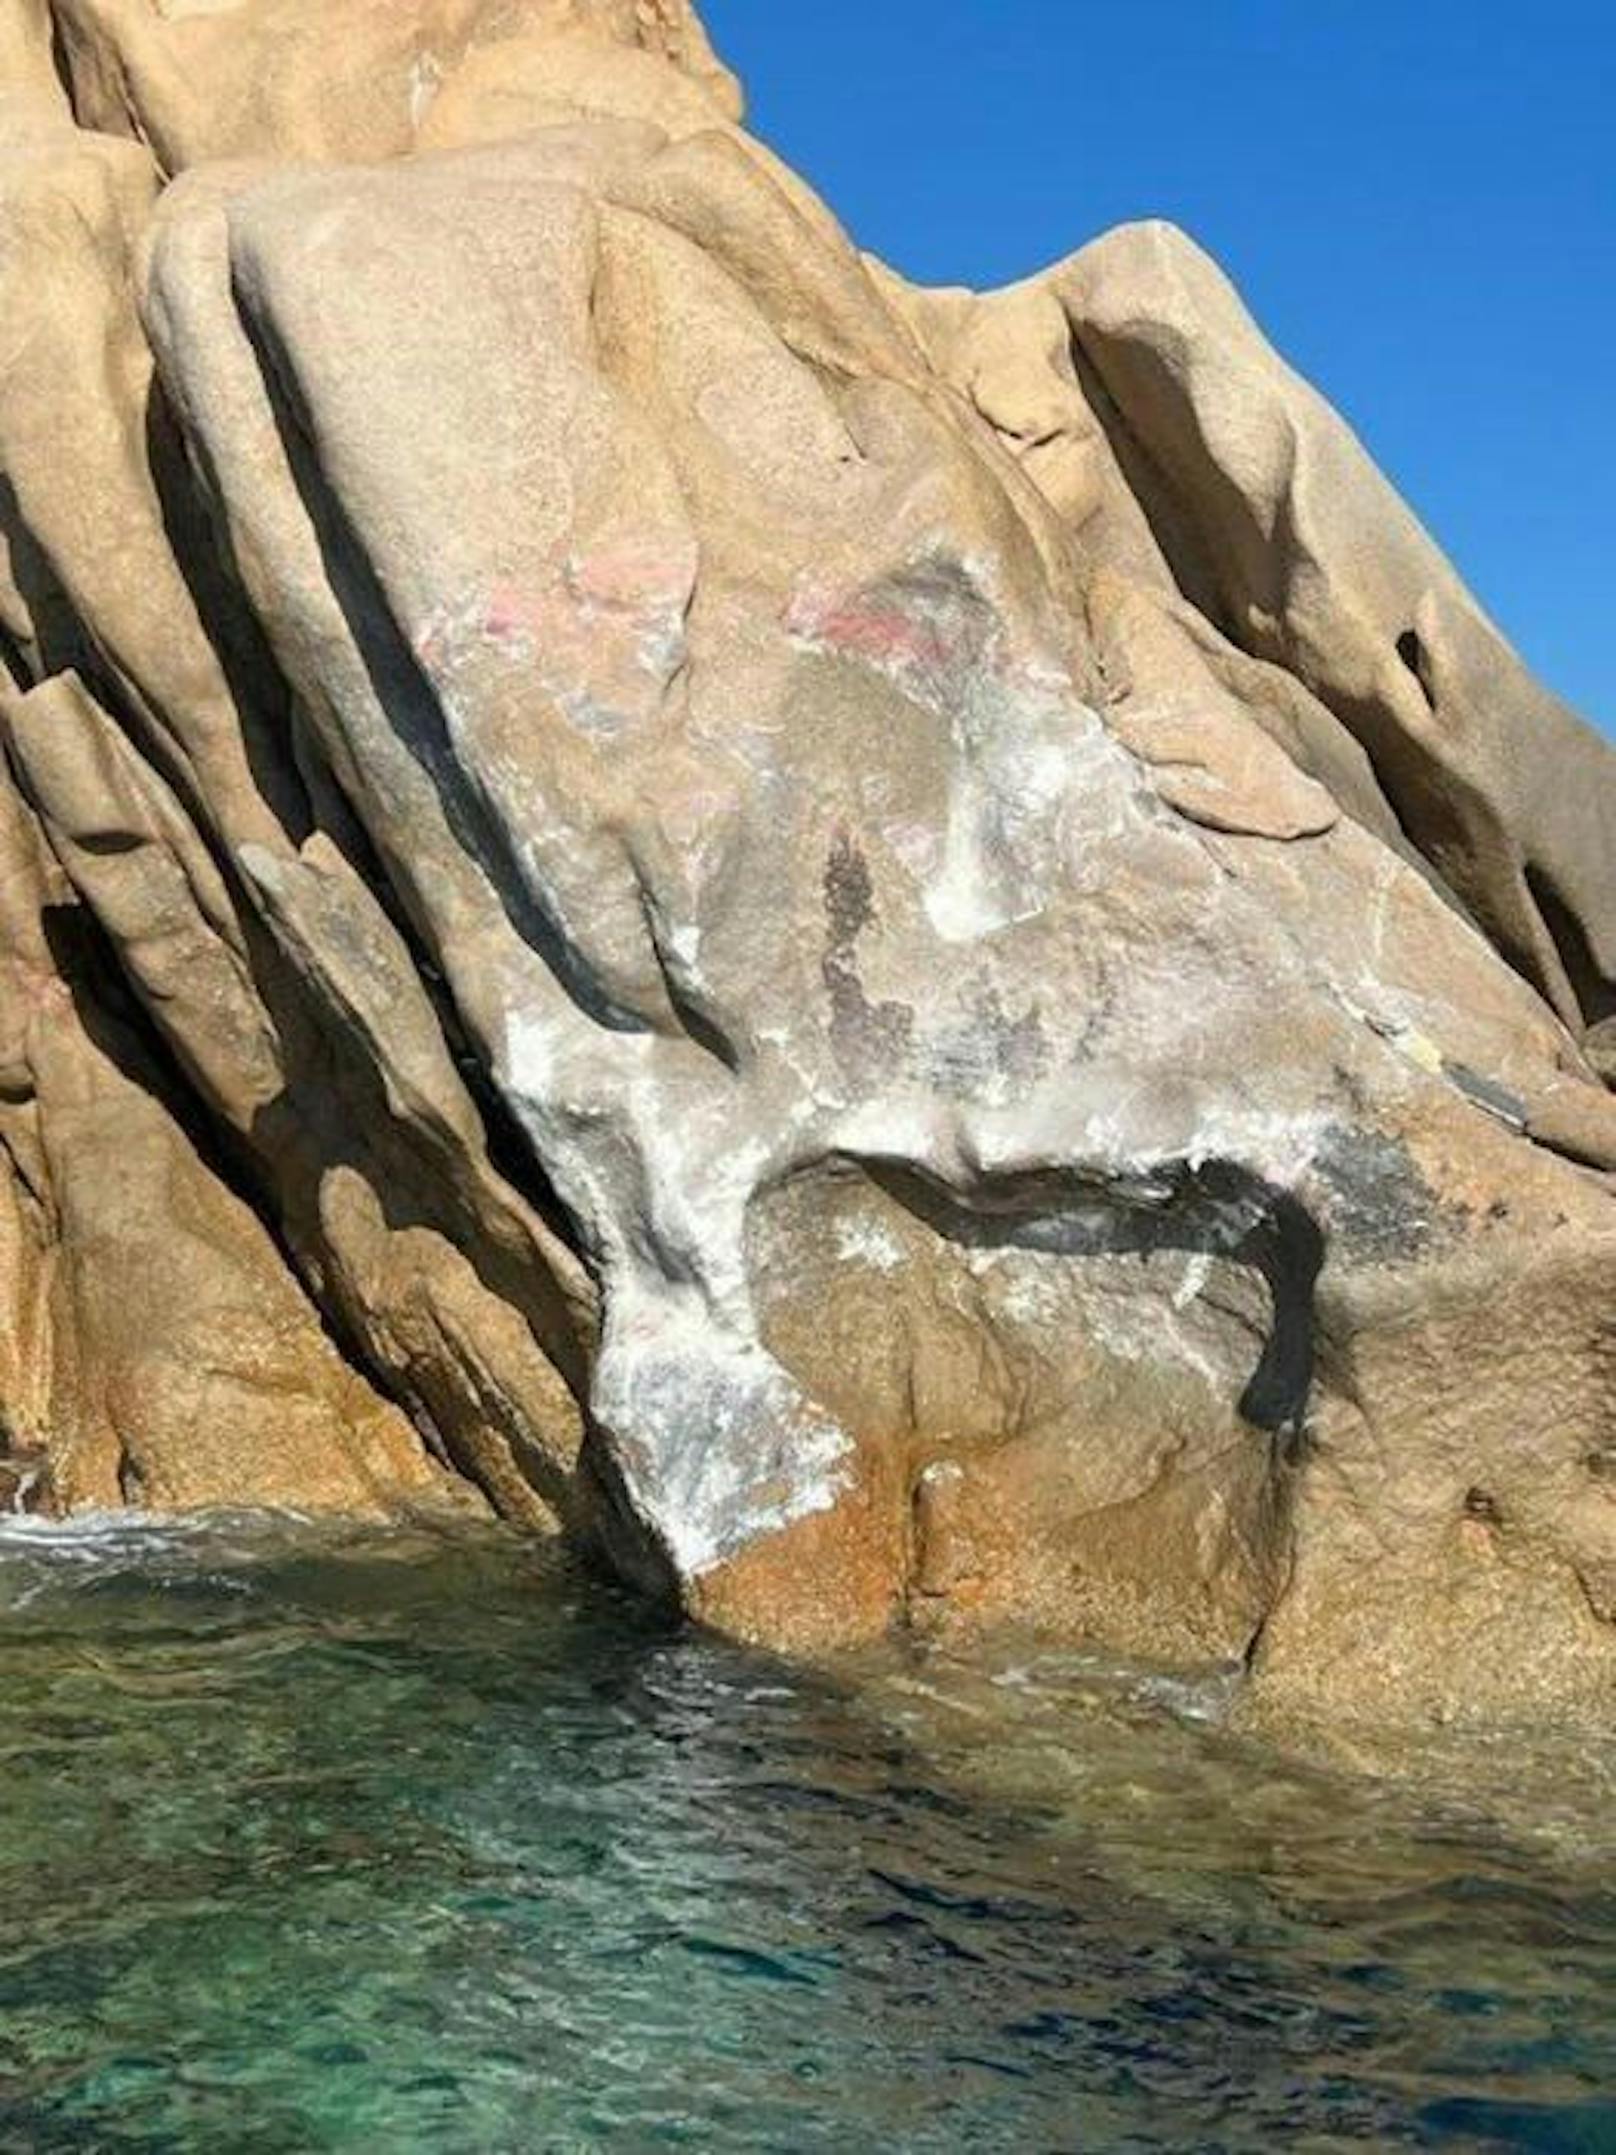 Die 21 Meter lange Yacht wurde völlig zerstört beim Aufprall mit den massiven Felsen in Sardinien.